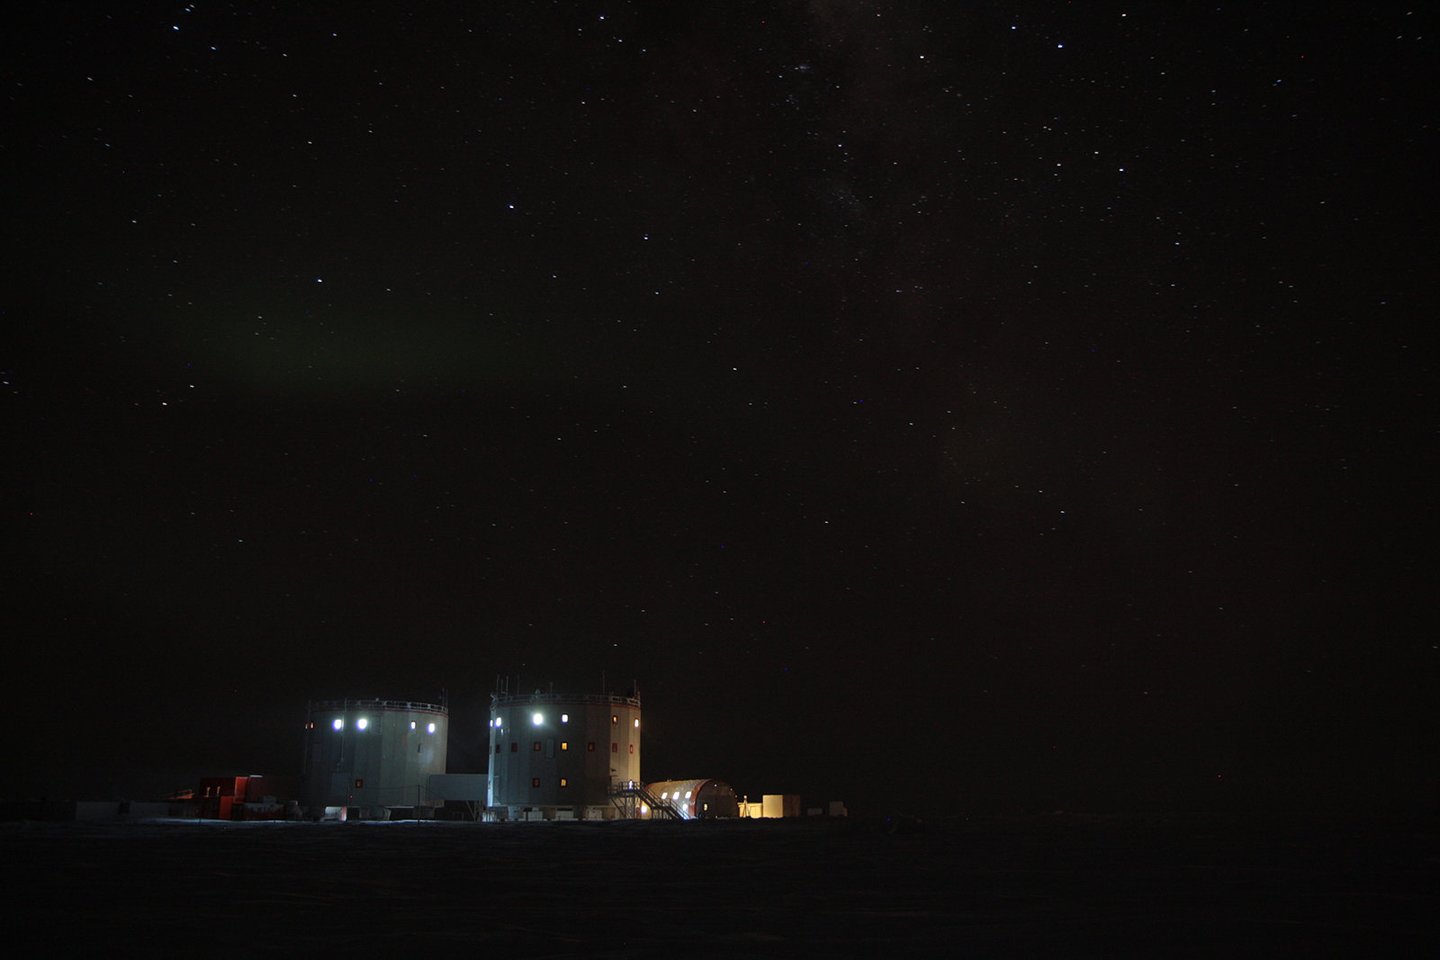  Antarktidos tyrimų stotyse tamsa gali tęstis pusę metų - tai tik vienas iš daugelio veiksnių, galinčių sukelti stresą ir elgesio pokyčius.<br> ESA/A. Salam nuotr.